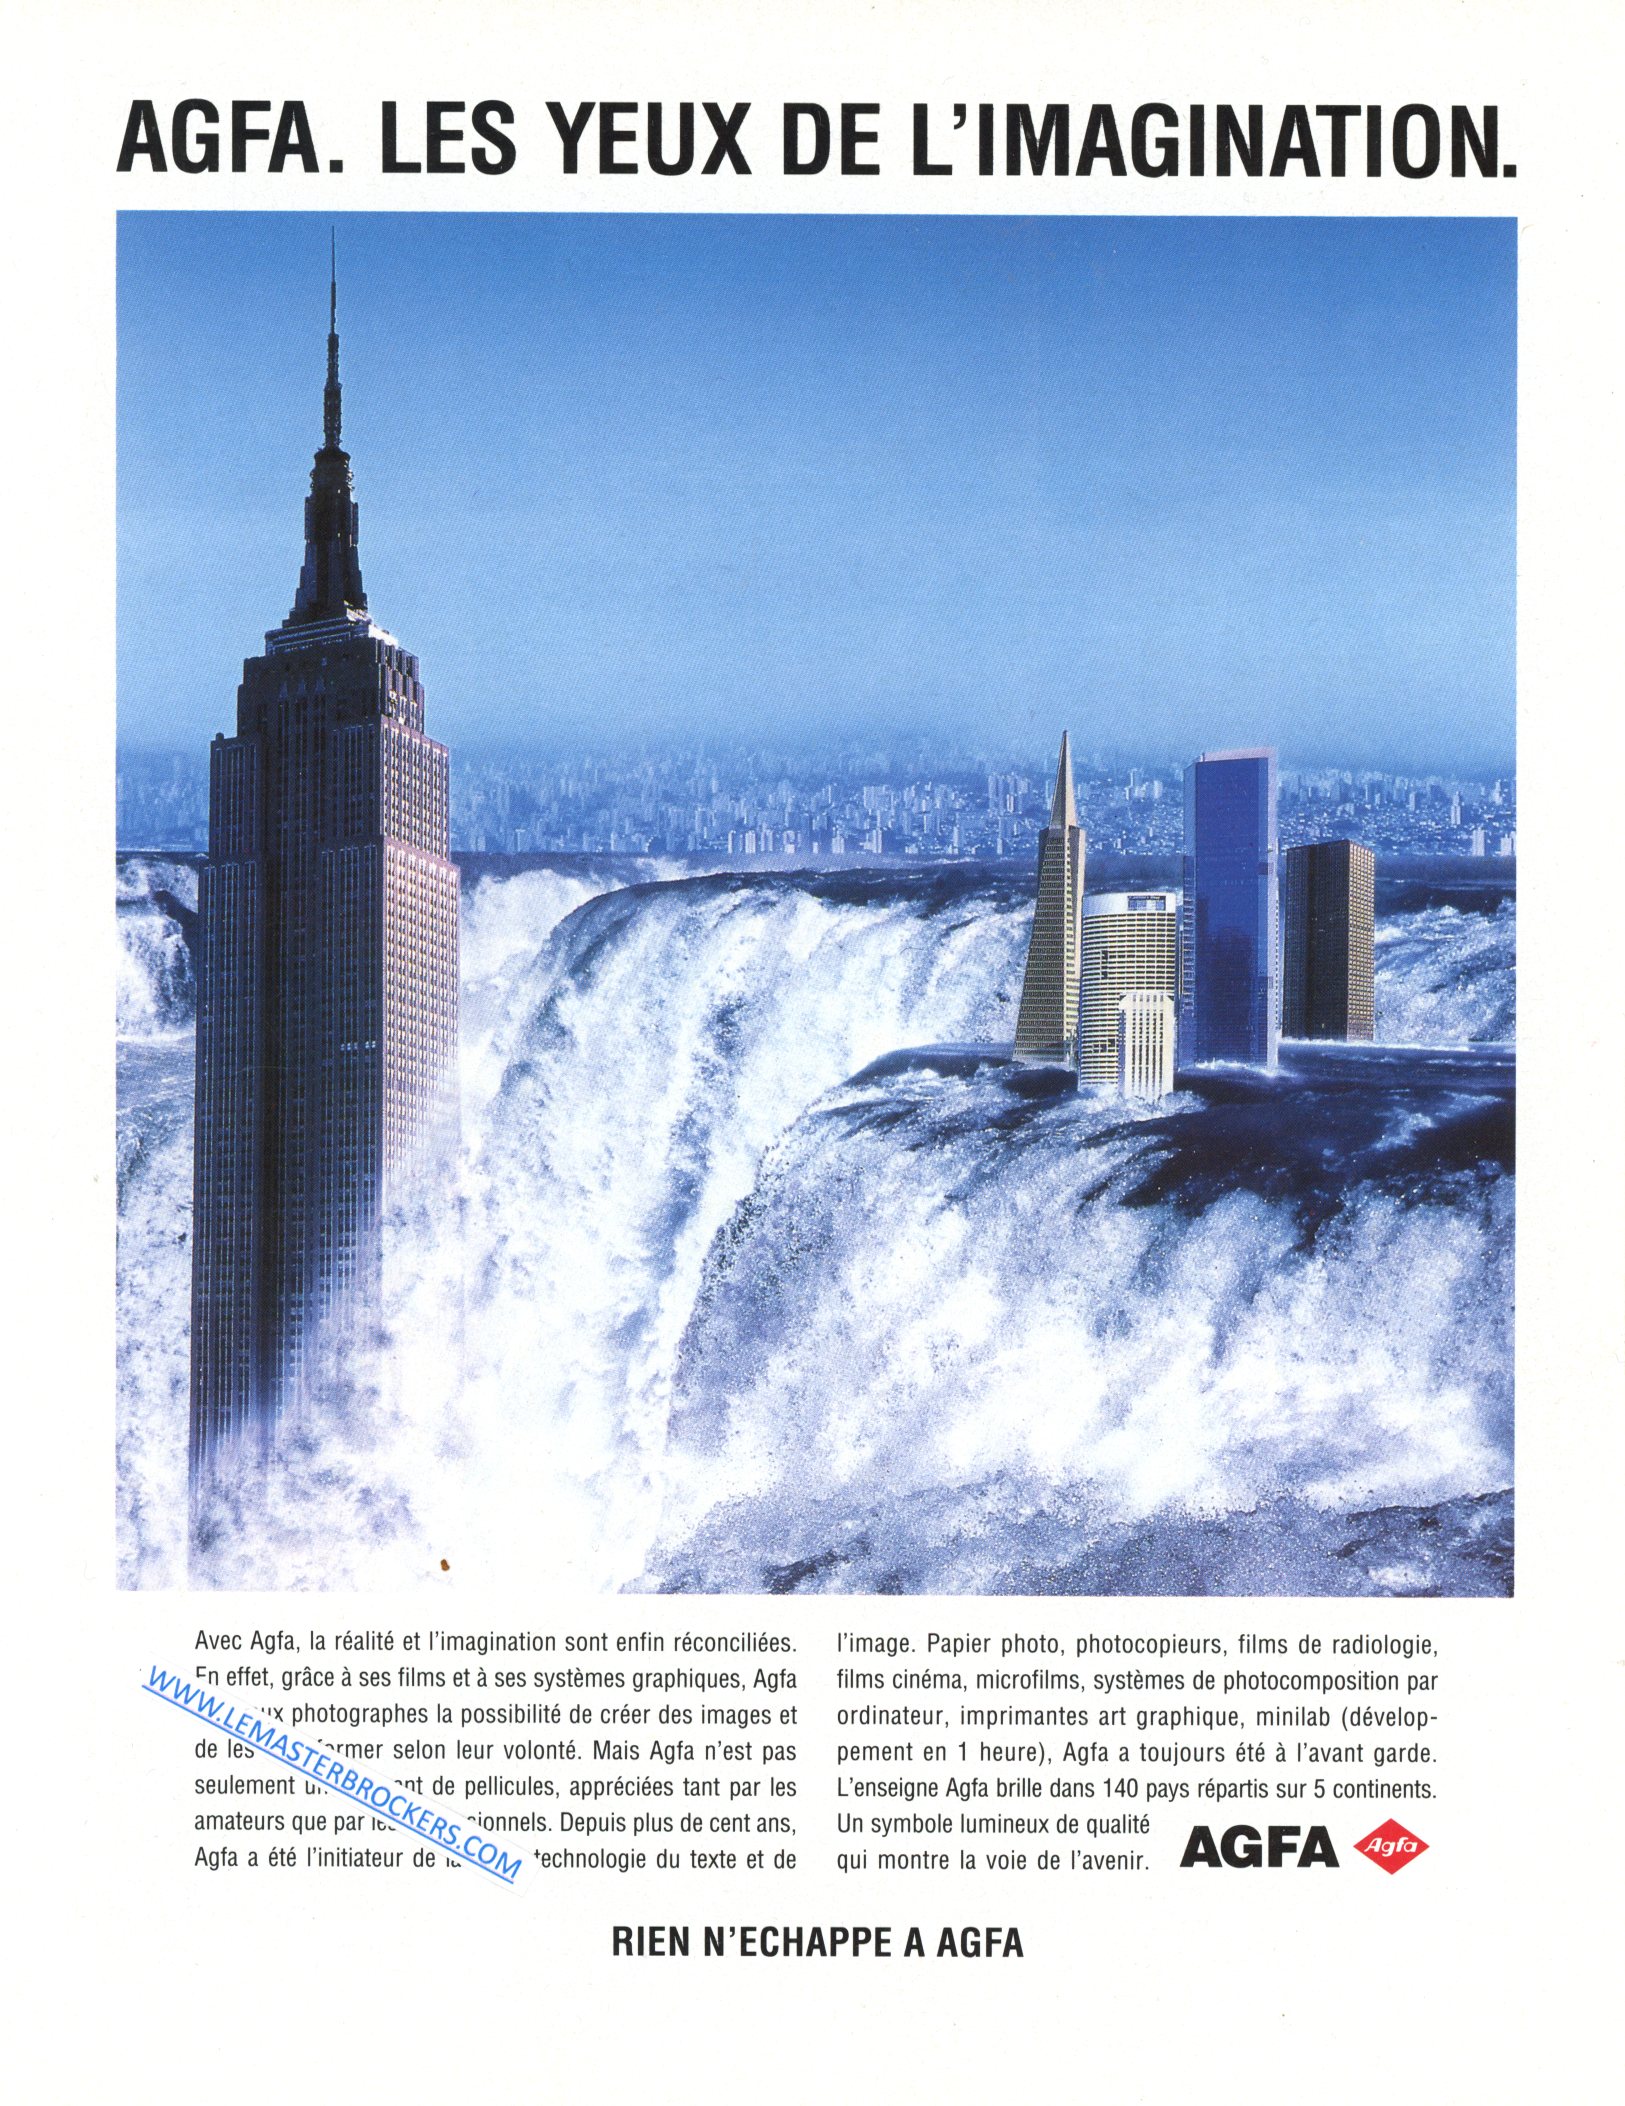 PUBLICITÉ ADVERTISING 1993 AGFA LES YEUX DE L'IMAGINATION LEMASTERBROCKERS